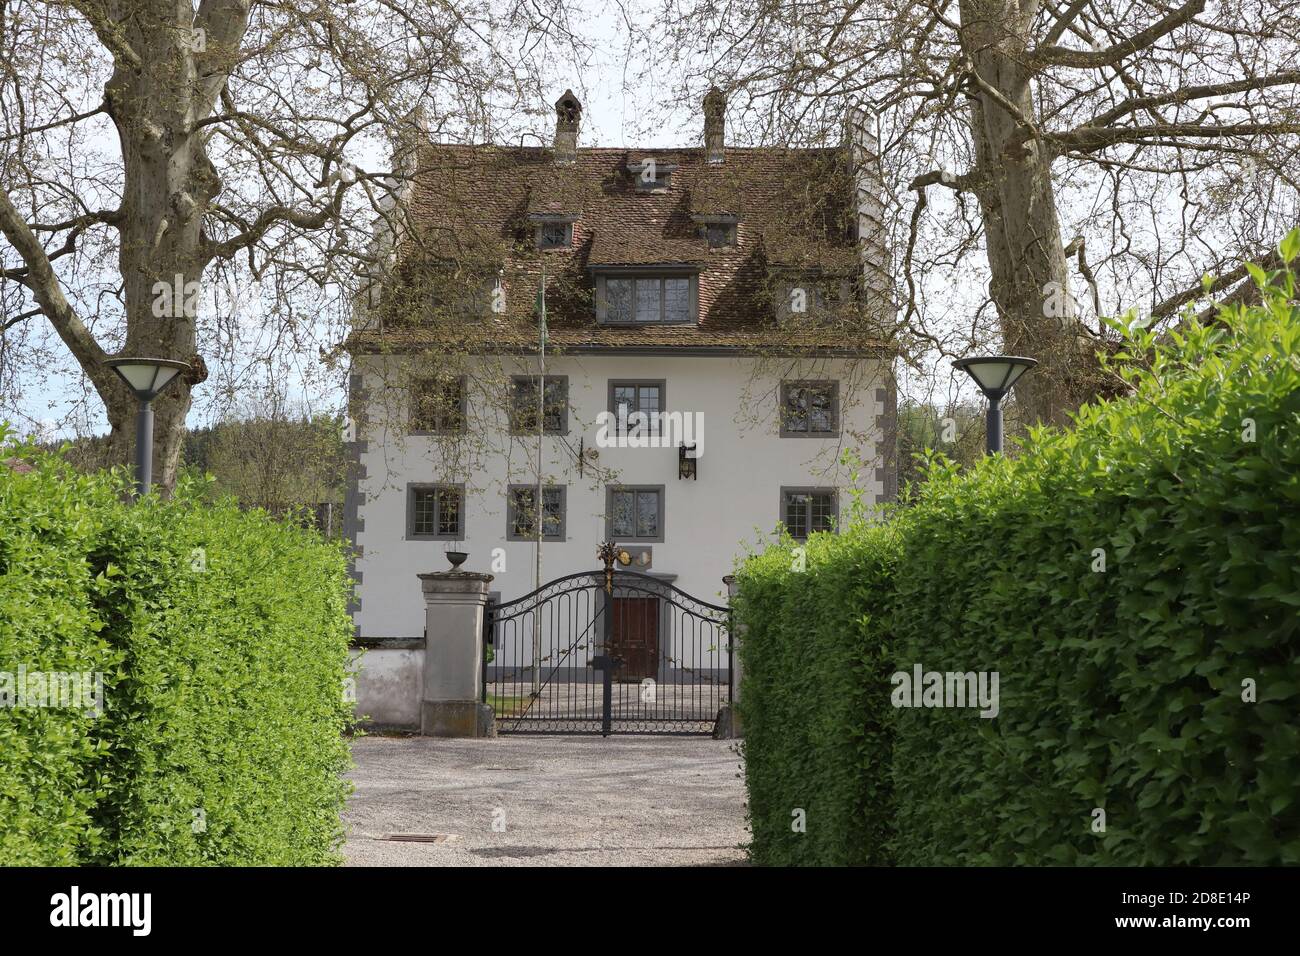 Knonau, Kanton Zuerich (ZH)/ Switzerland - April 19 2020: Castle Schloss Knonau located in canton Zurich, Switzerland Stock Photo